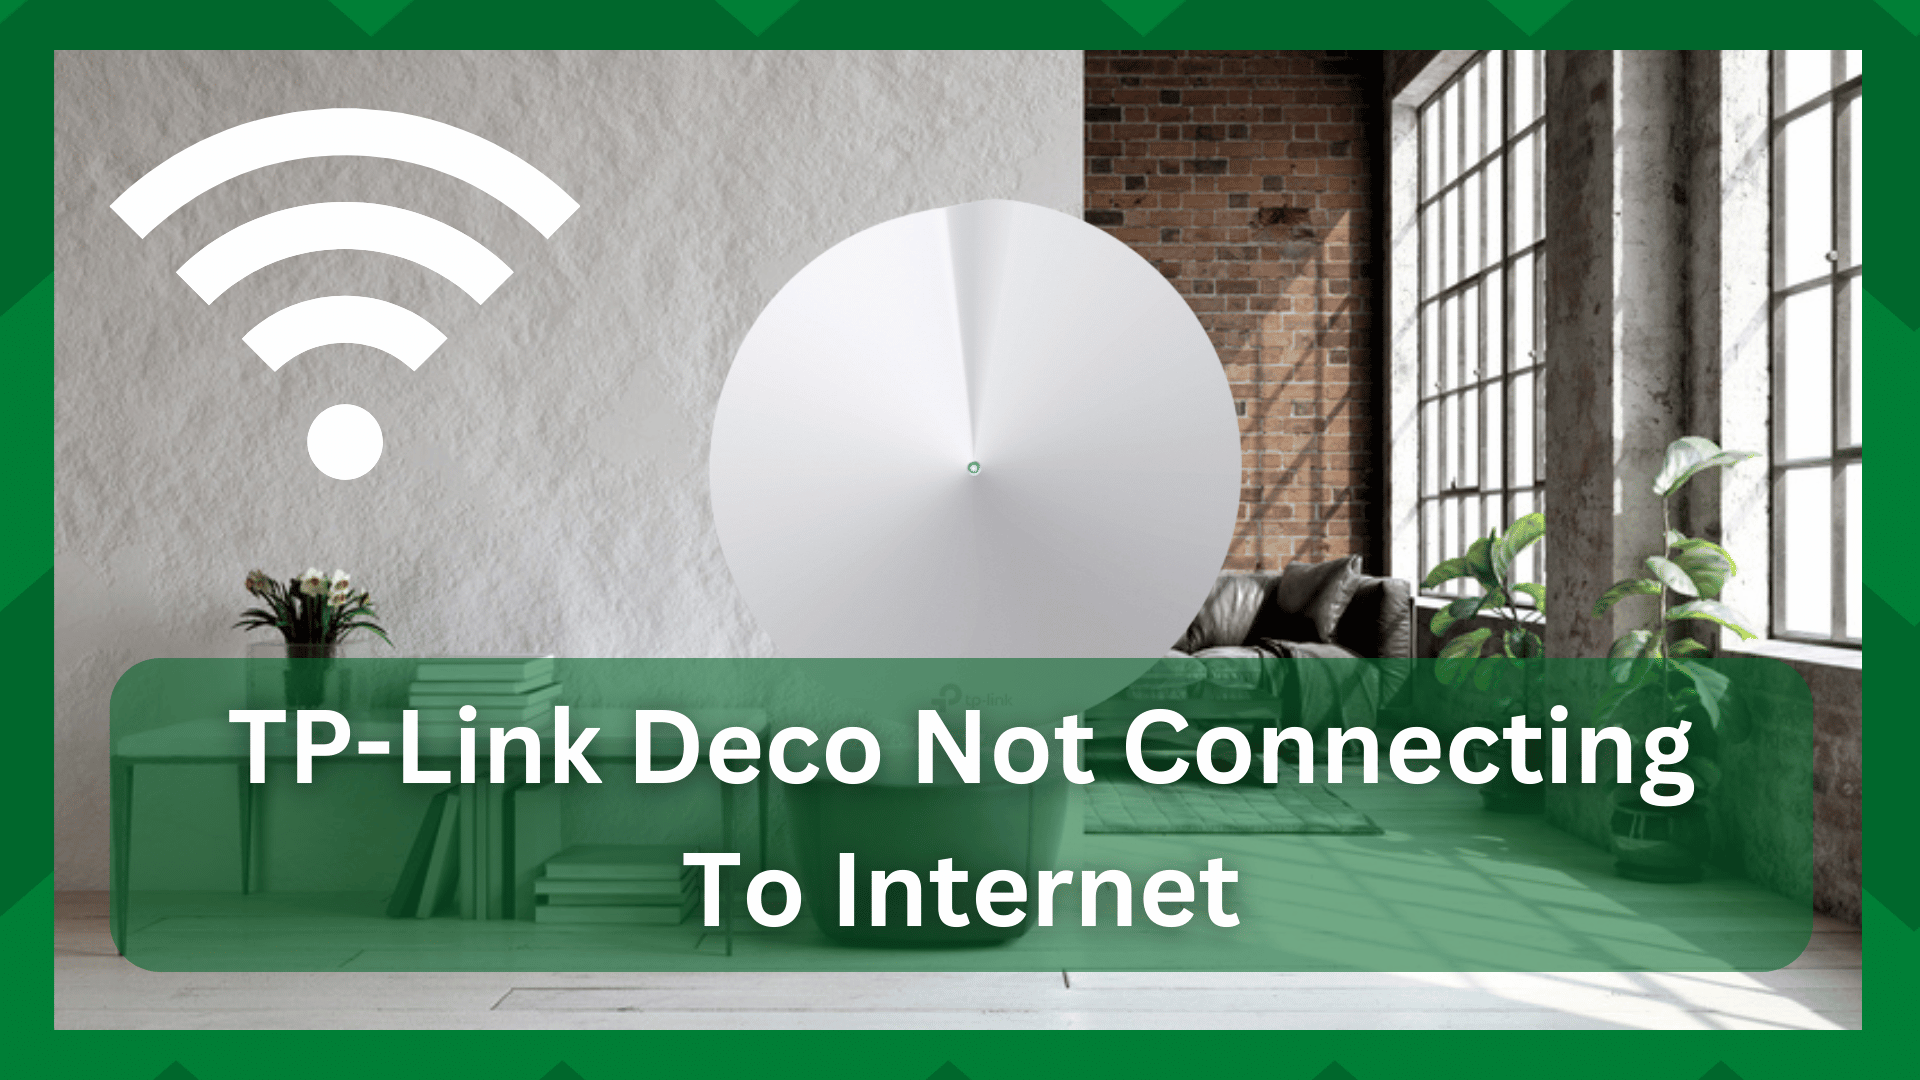 TP-Link Deco इन्टरनेटमा जडान भइरहेको छैन (ठीक गर्न 6 चरणहरू)